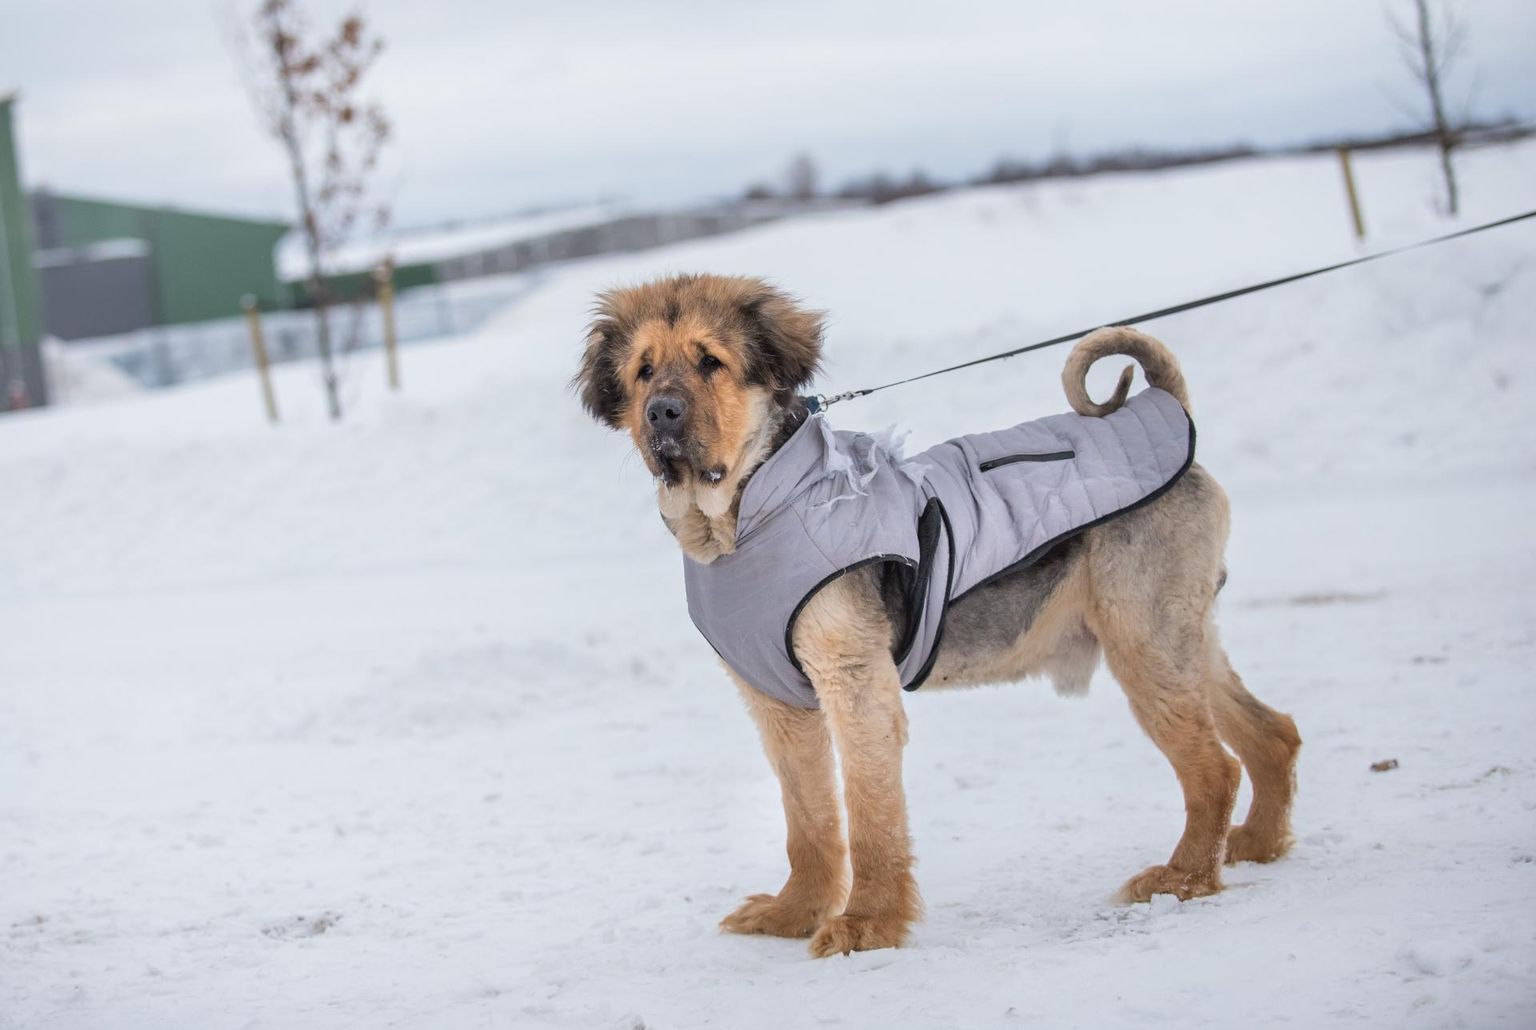 Koera heaolu külmal ajal sõltub peale käreda pakase paljust, alustades karvkatte eripärast, tuulest, niiskusest, toitumisest ja aktiivsusest.